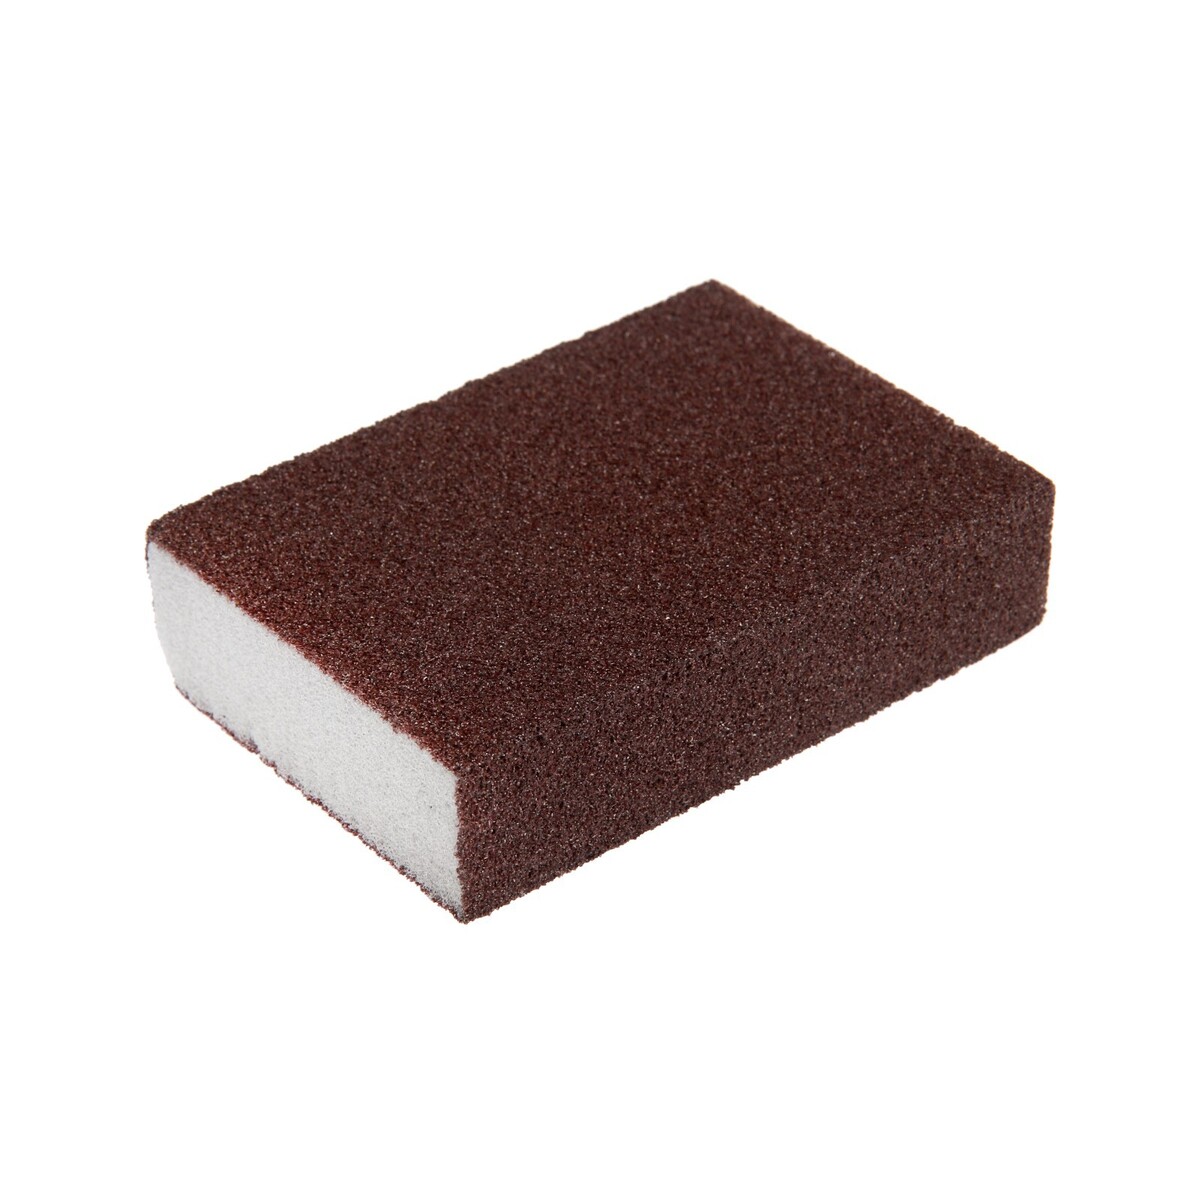 Губка абразивная шлифовальная тундра, мягкая, 100 х 70 х 25 мм, p100 amig8558 абразивная губка sanding sponge sheet 280